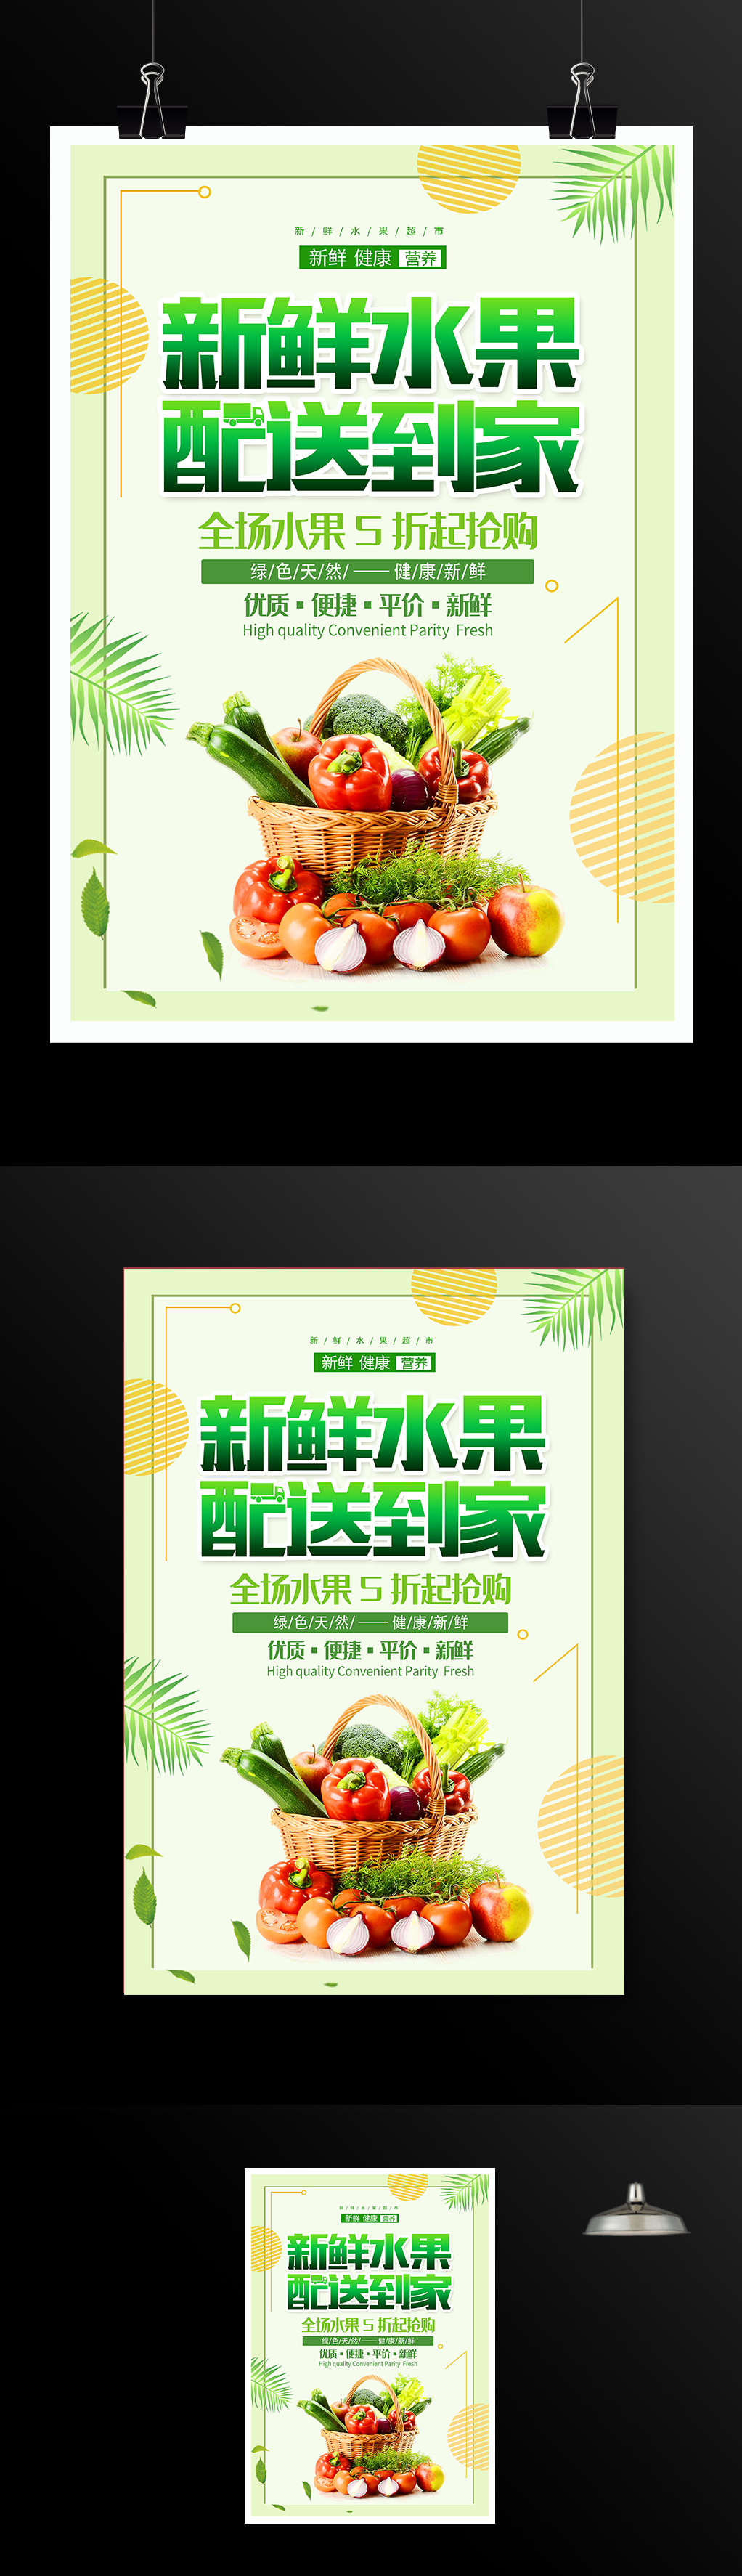 新鲜水果配送到家宣传促销海报